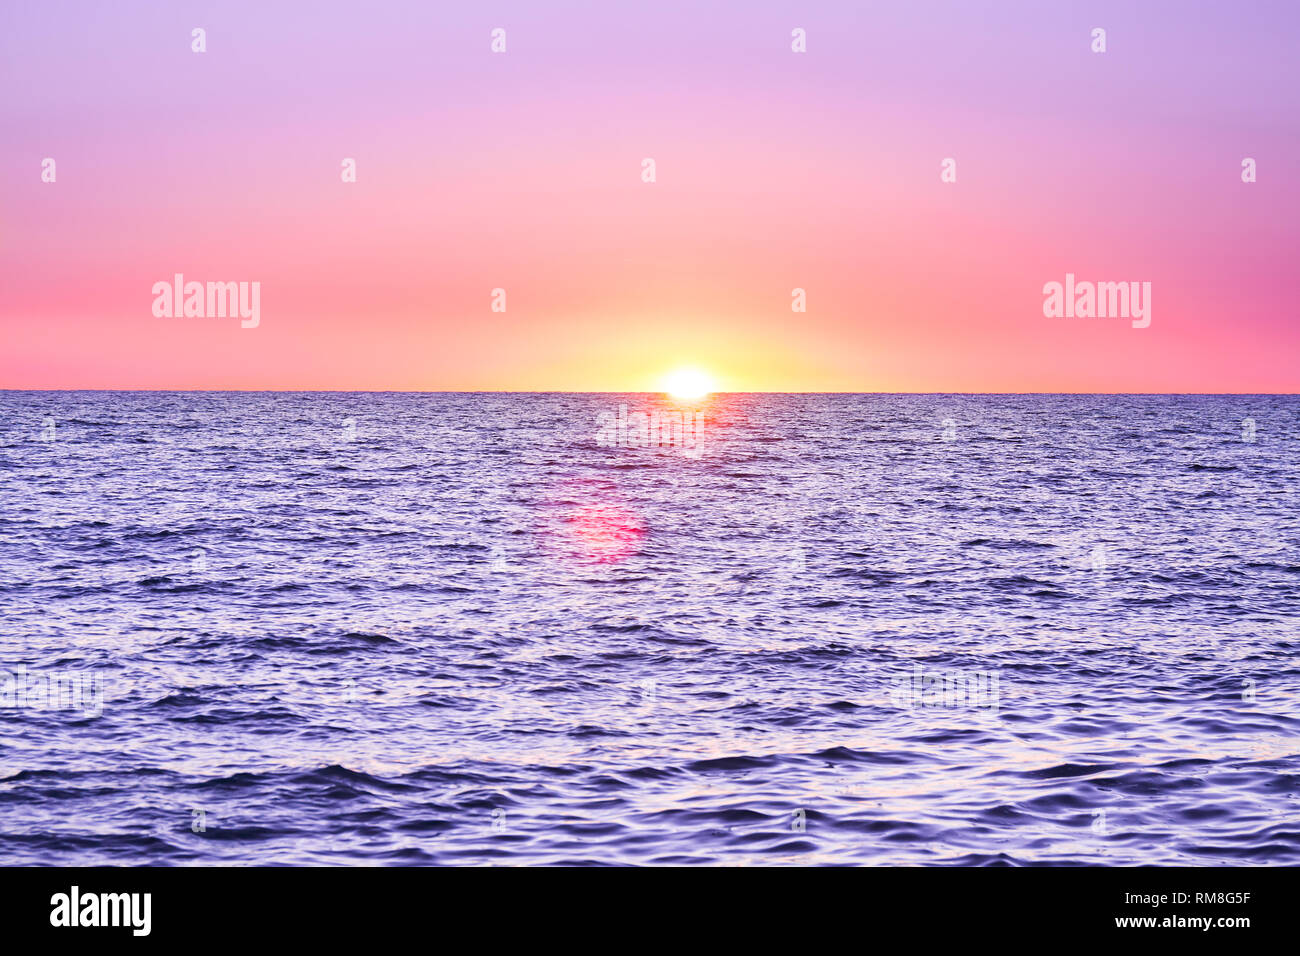 Viola paesaggio con mare e tramonto. sera sun oltre oceano. Uno splendido scenario con il tramonto sul mare vista panoramica Foto Stock